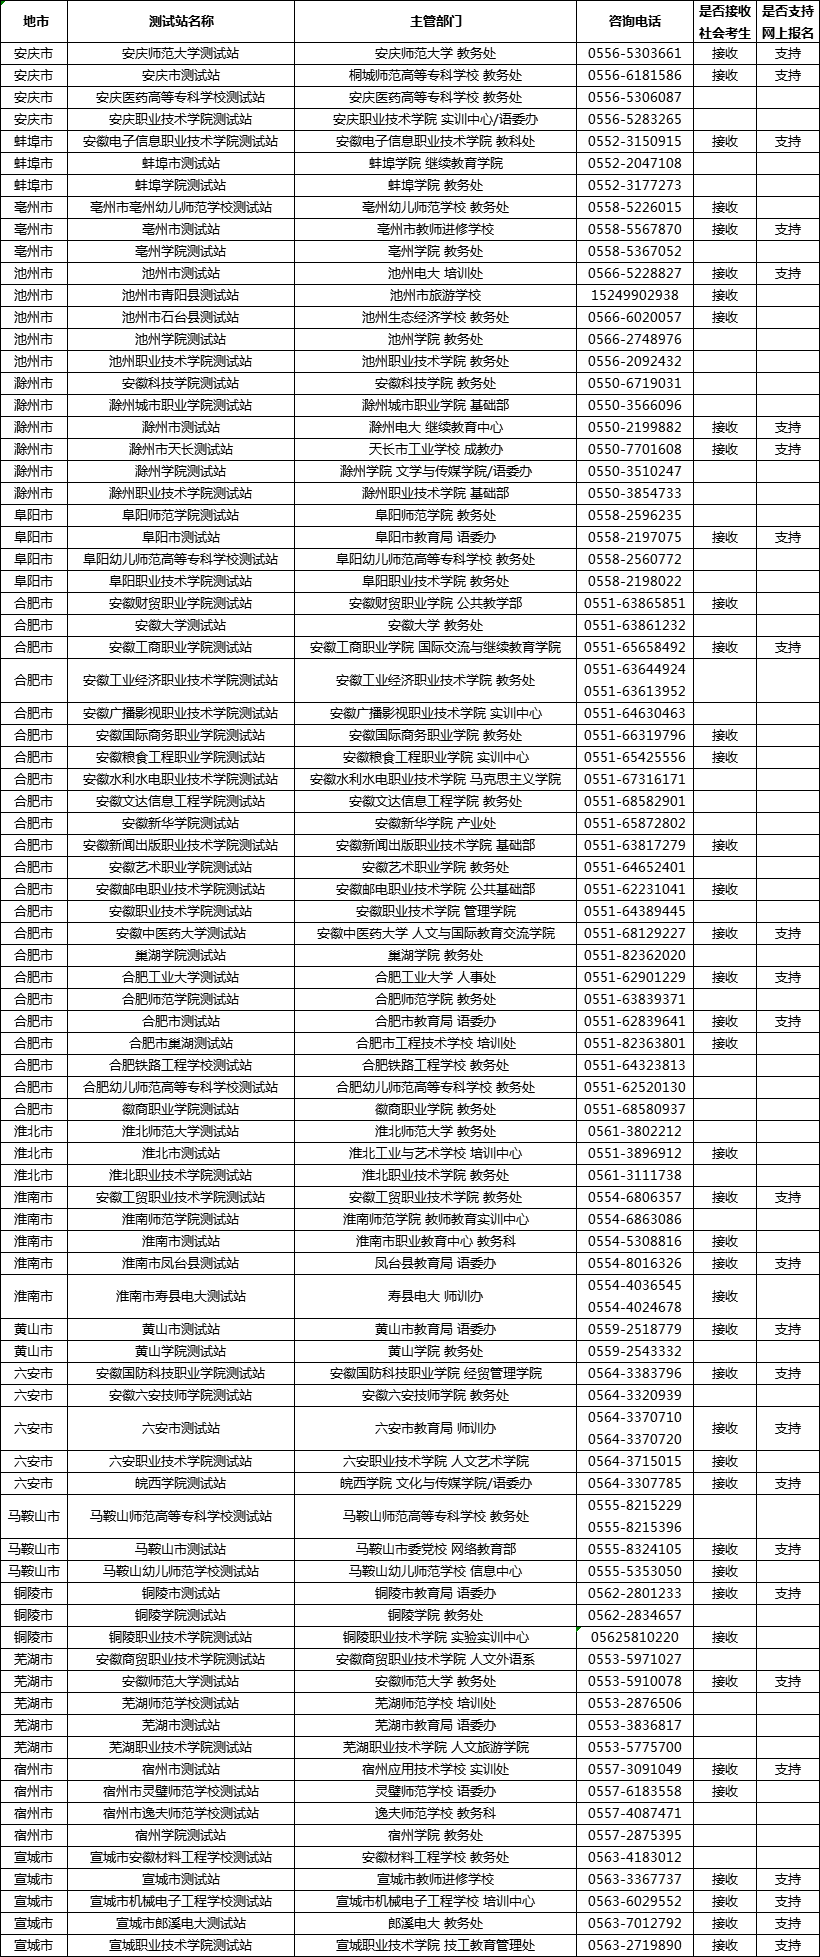 安徽省普通话测试站联系方式汇总（2019年1月更新）